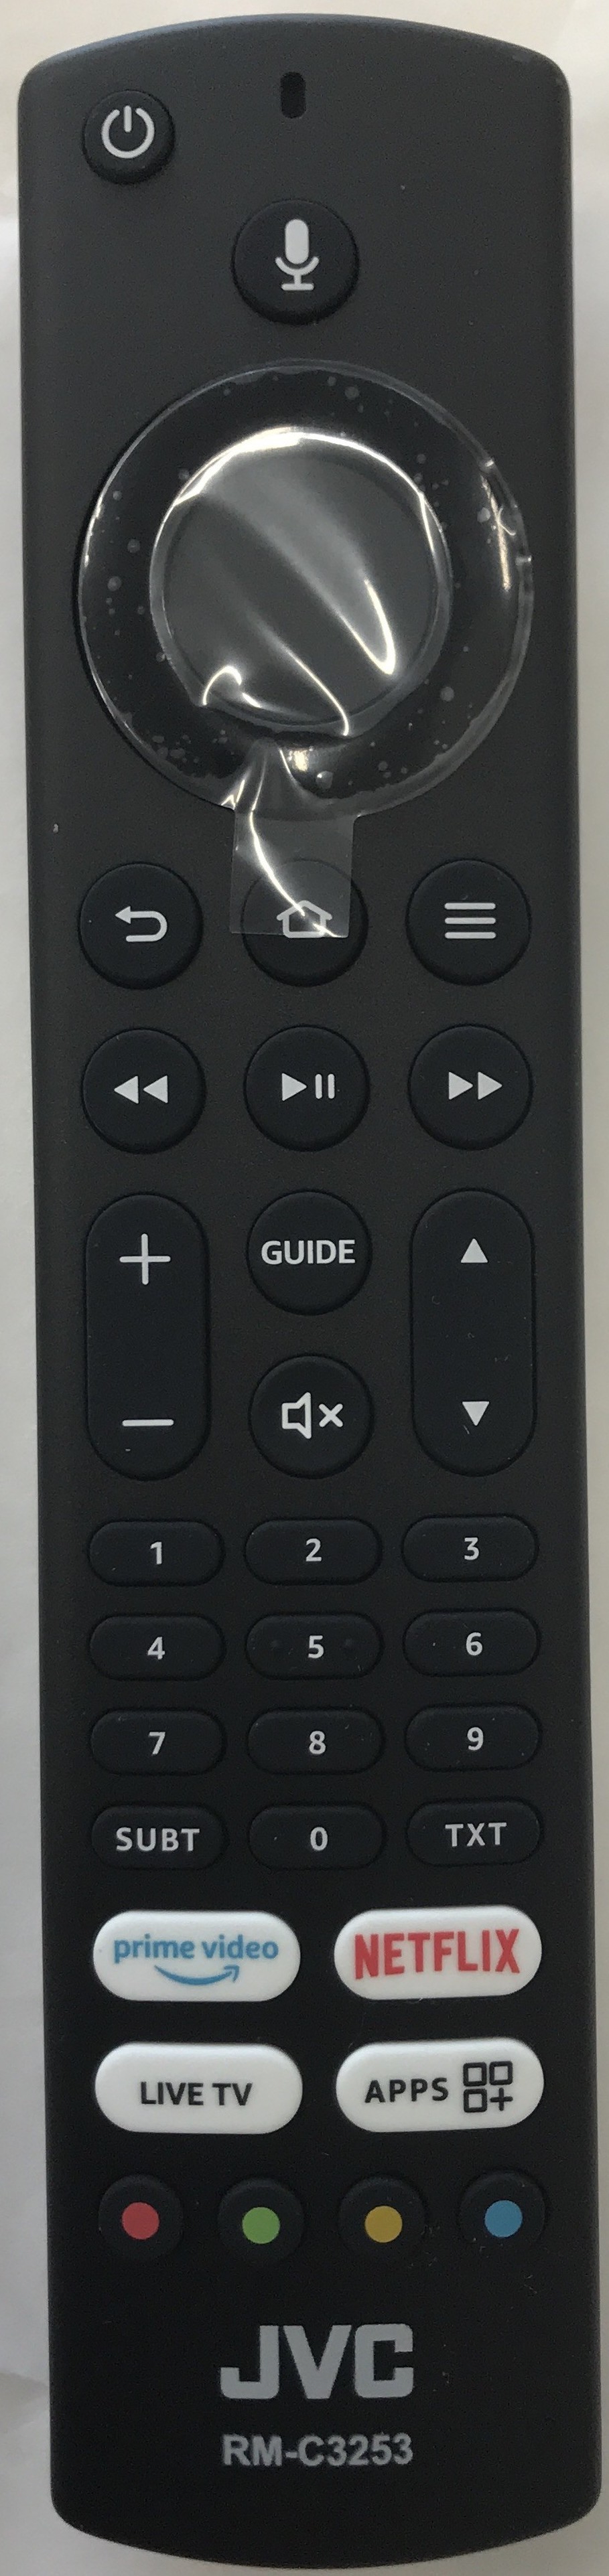 JVC 10123636 Smart Remote Control Original